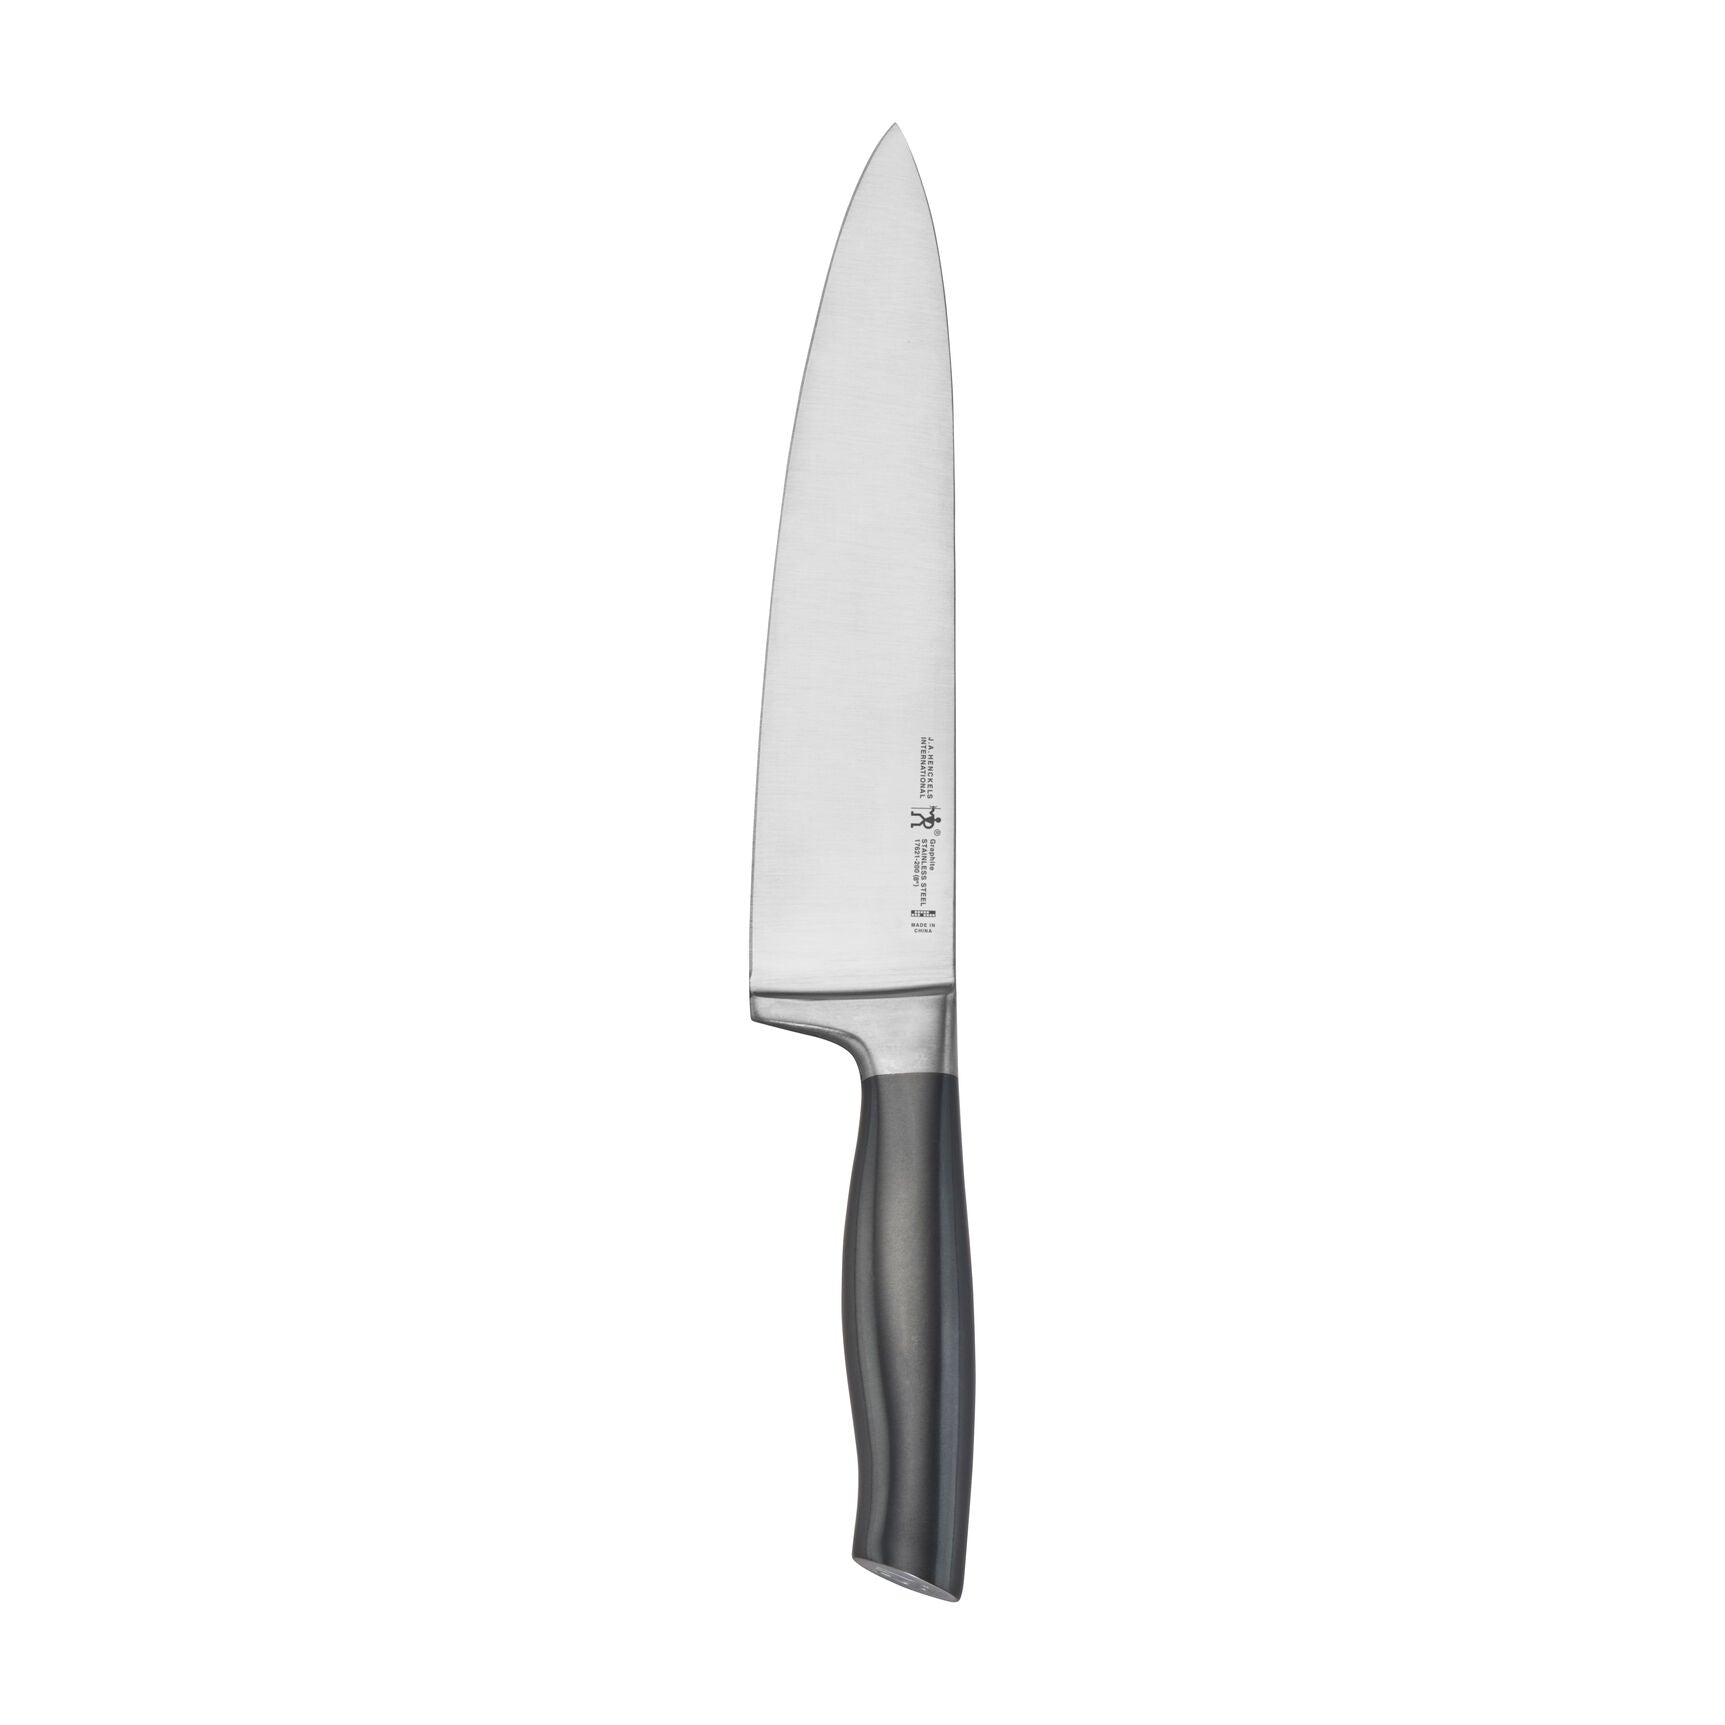 Henckels Graphite 7-piece Self-Sharpening Knife Block Set